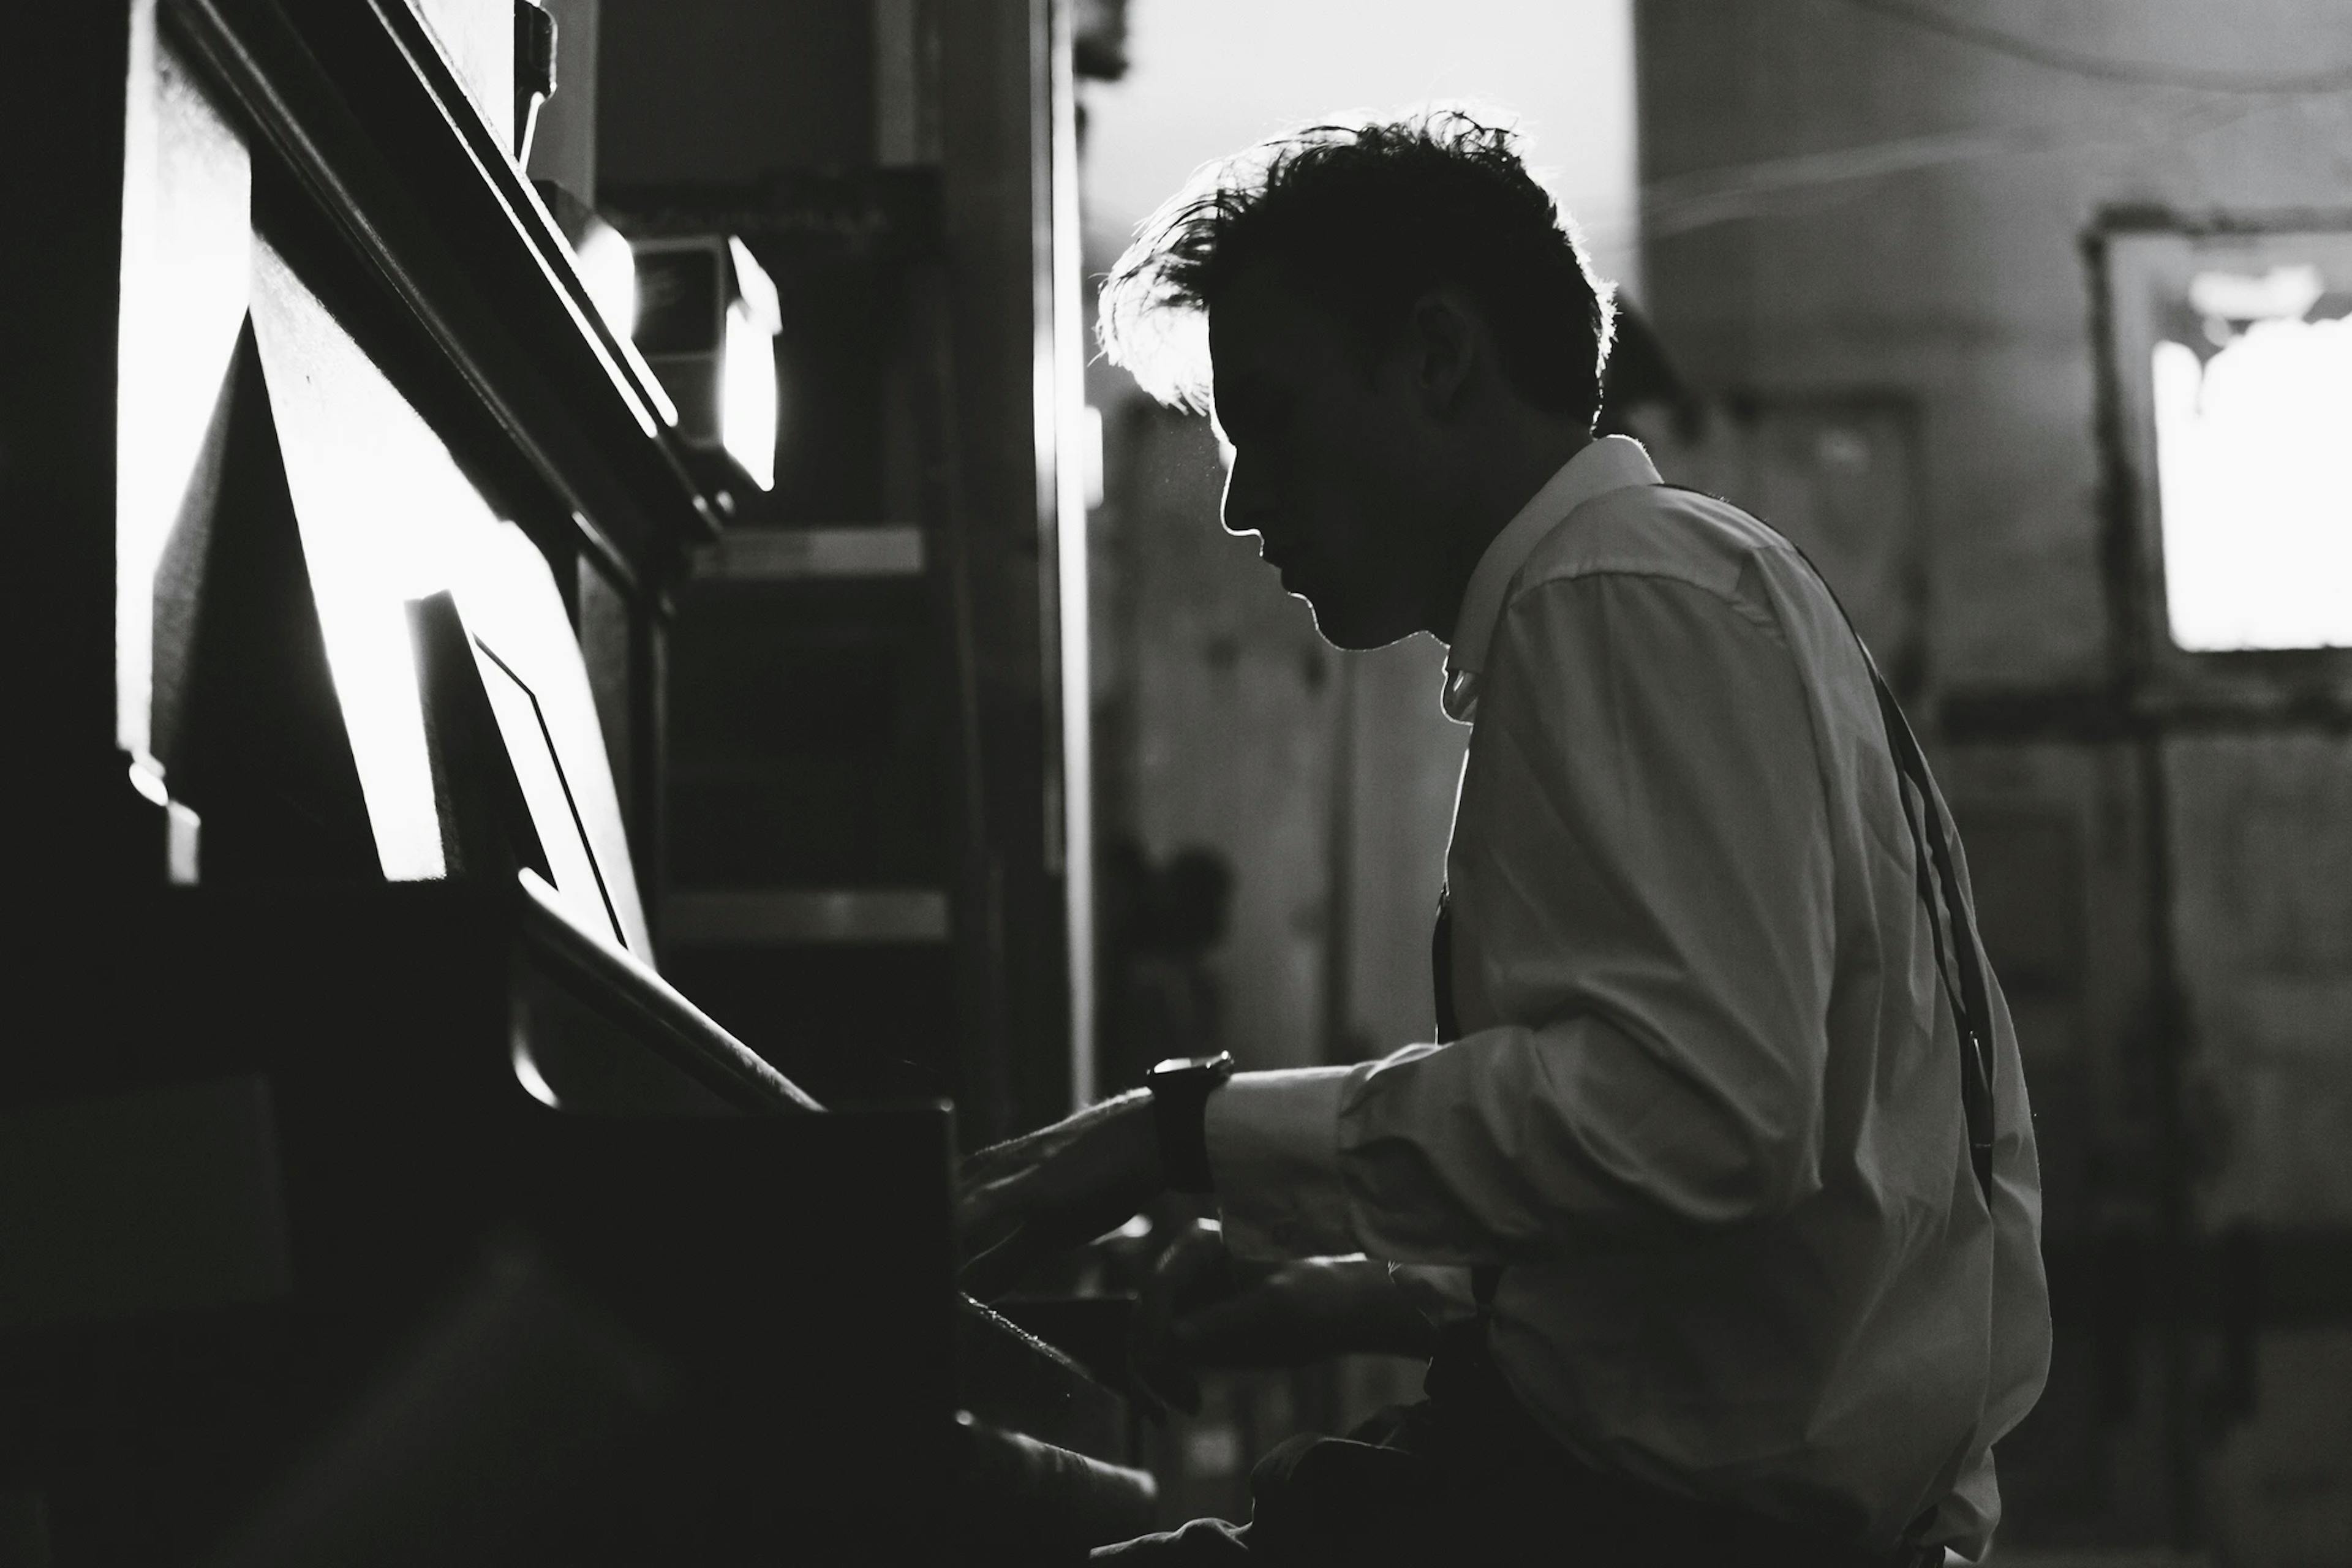 Comment apprendre à jouer du piano ? La marche à suivre du pianiste débutant.  — Elpiano